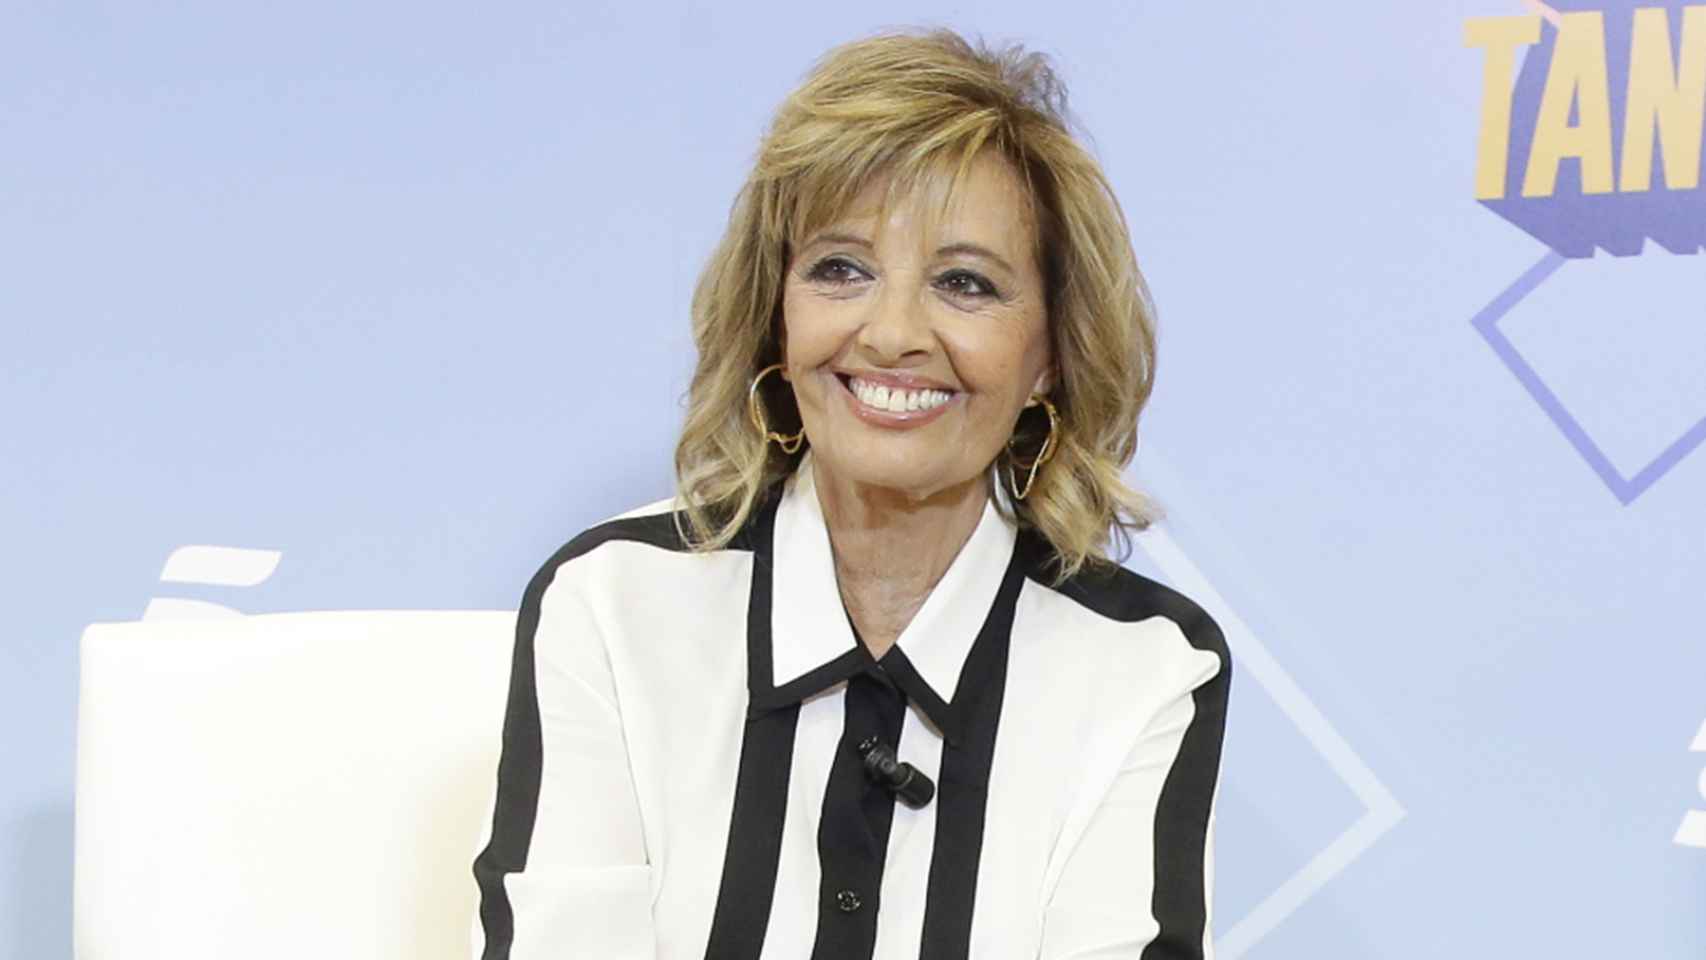 María Teresa Campos en una imagen promocional de Mediaset.